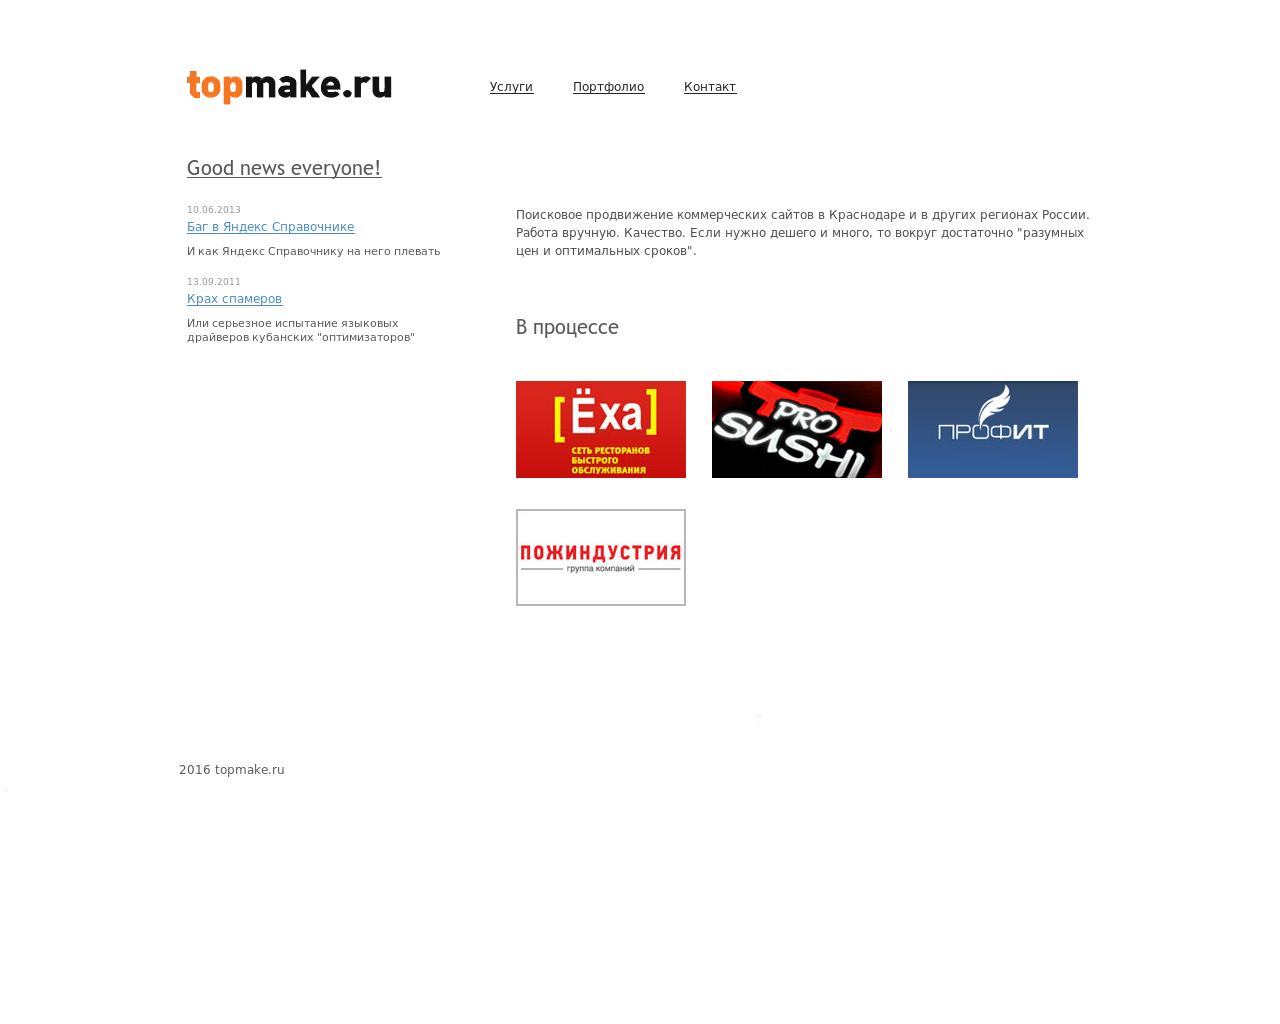 Изображение сайта topmake.ru в разрешении 1280x1024